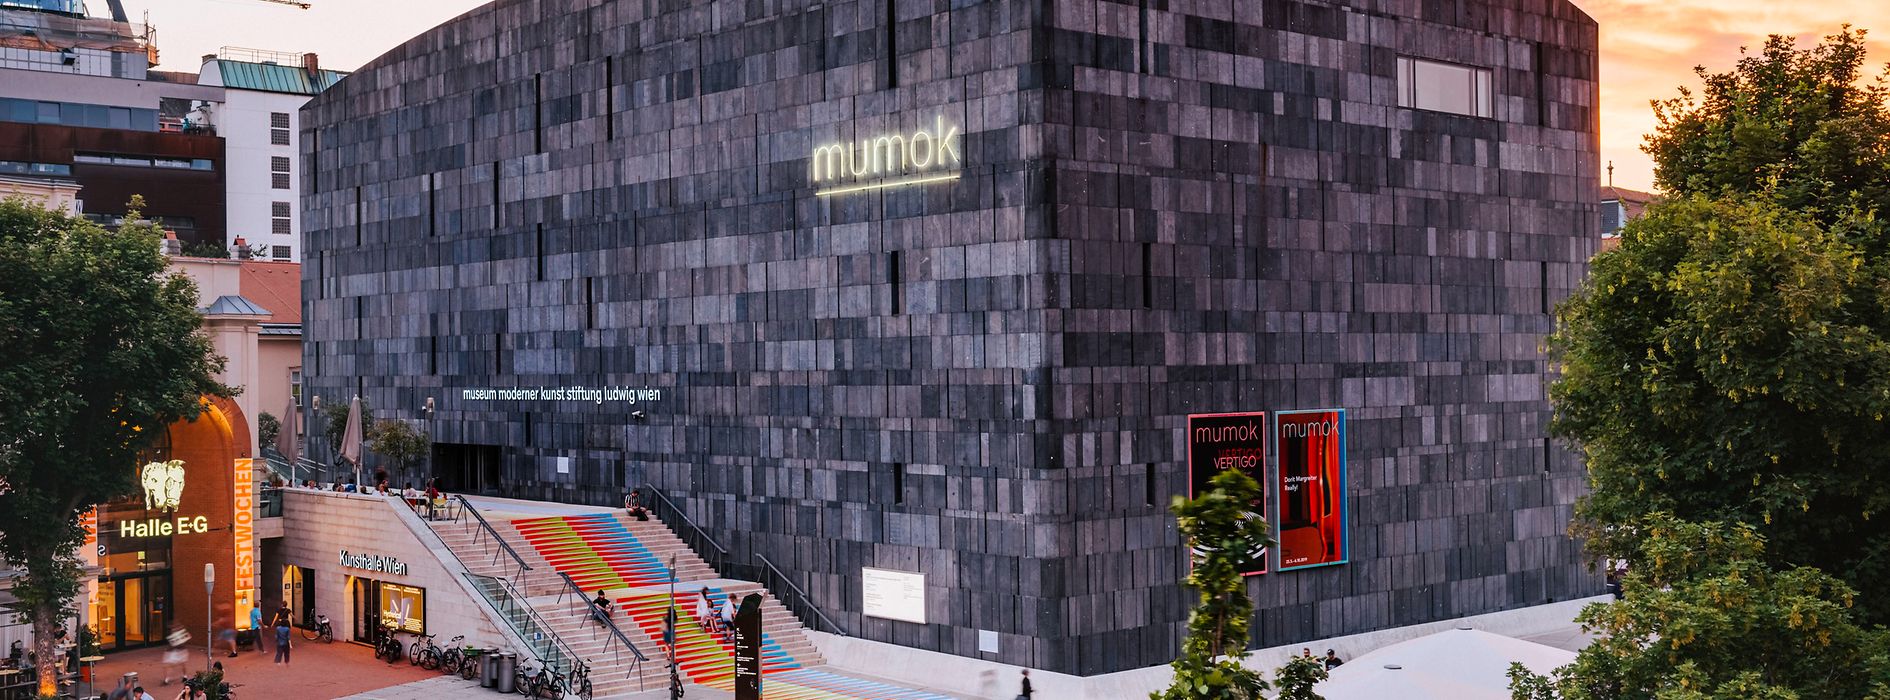 mumok, Музей современного искусства, вид снаружи, Музейный квартал 